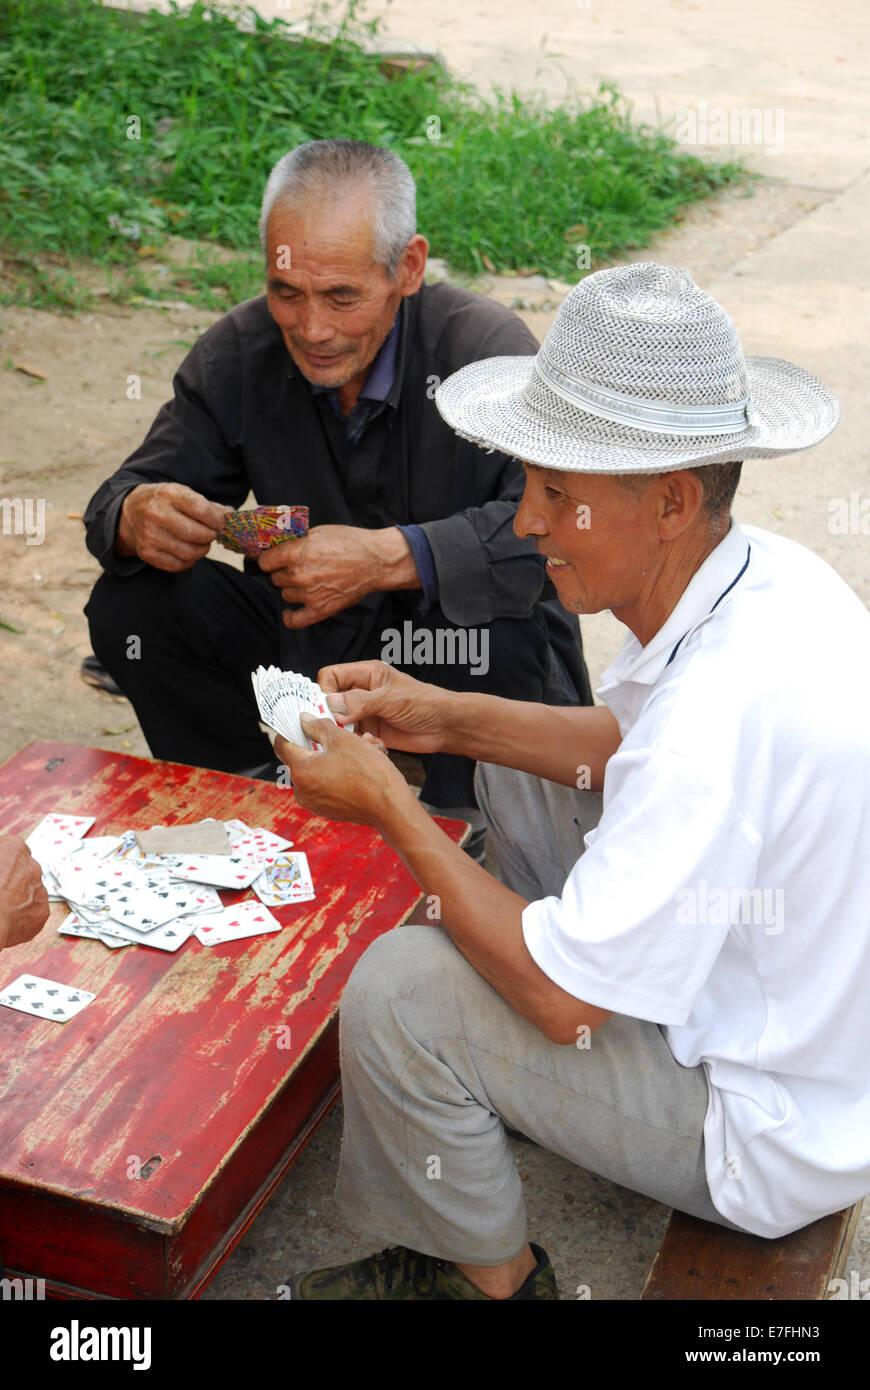 Gli uomini cinesi giocando a carte, Pechino Cina 2014 Foto Stock